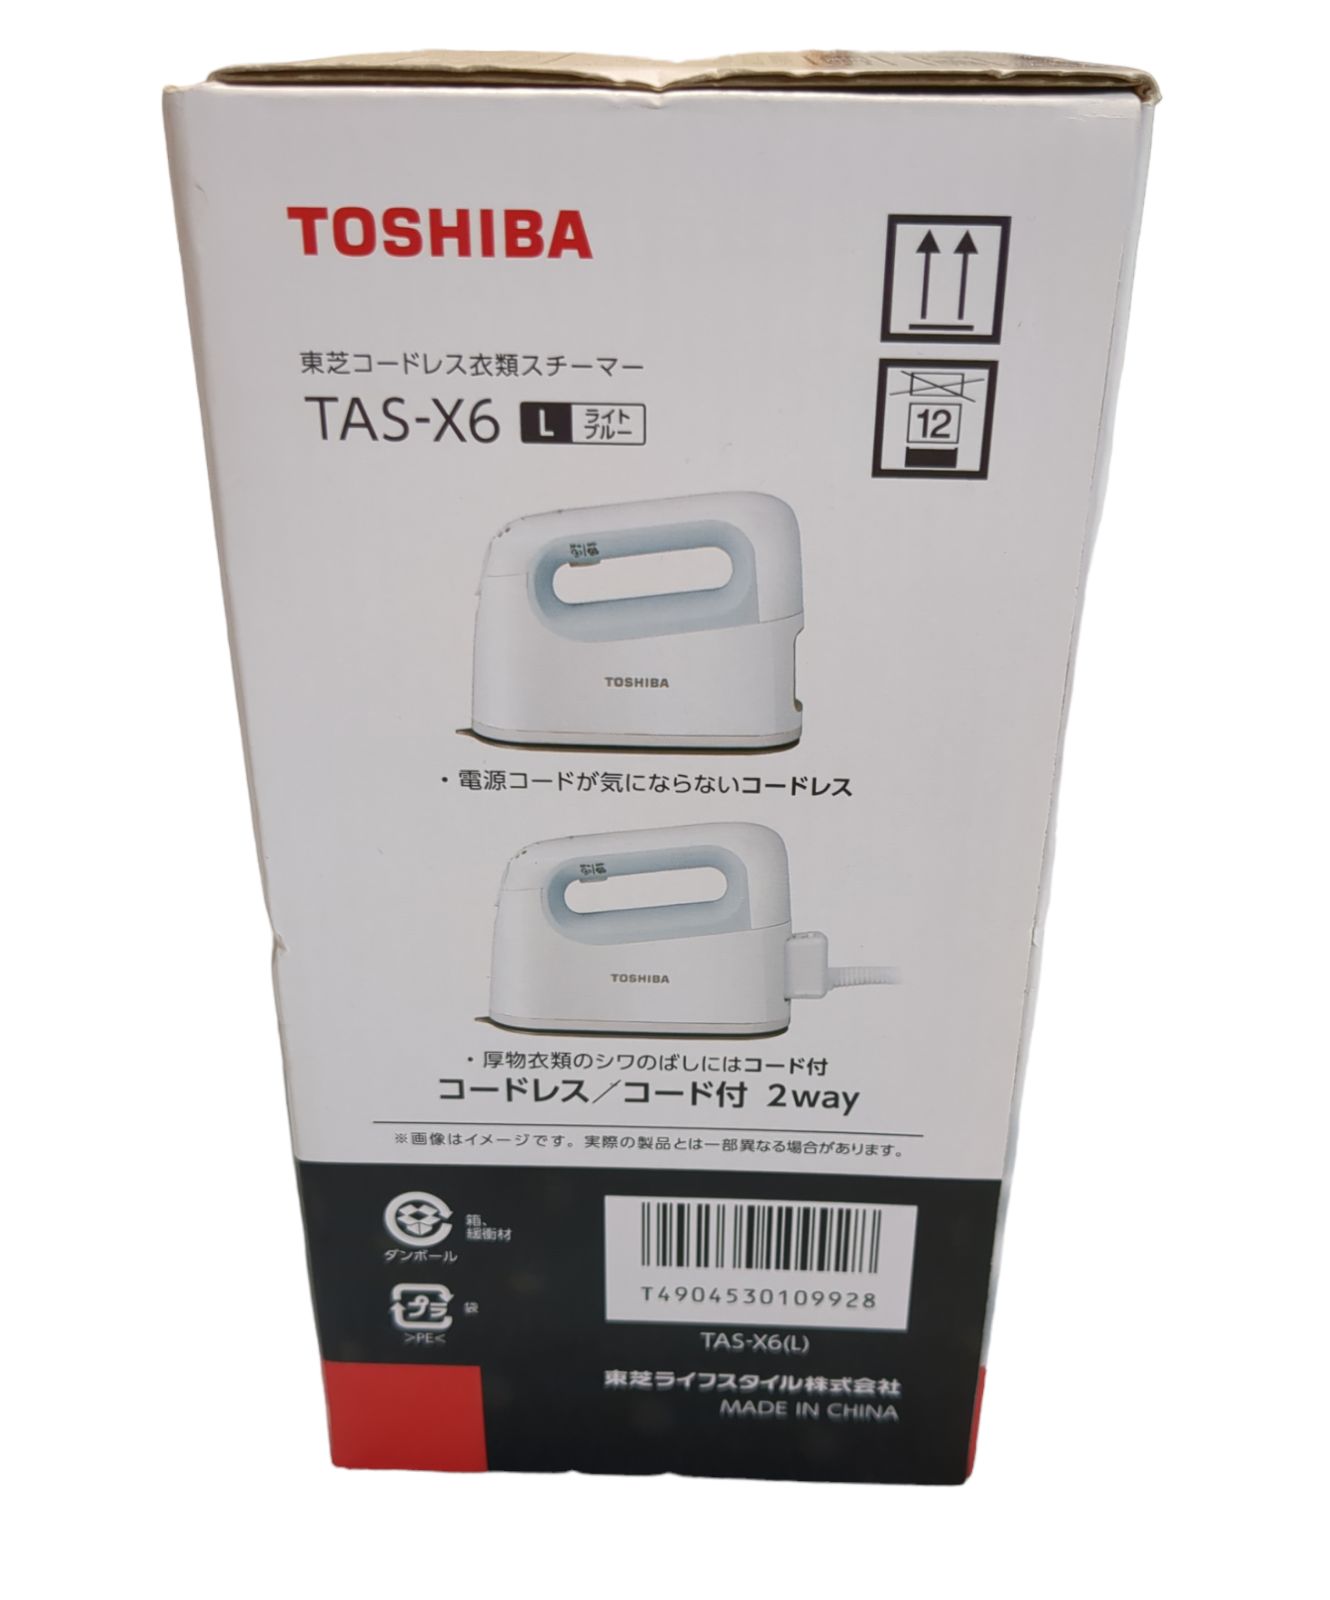 新品未使用 TOSHIBA TAS-X6 (L) ブルー スチームアイロン - リバティ